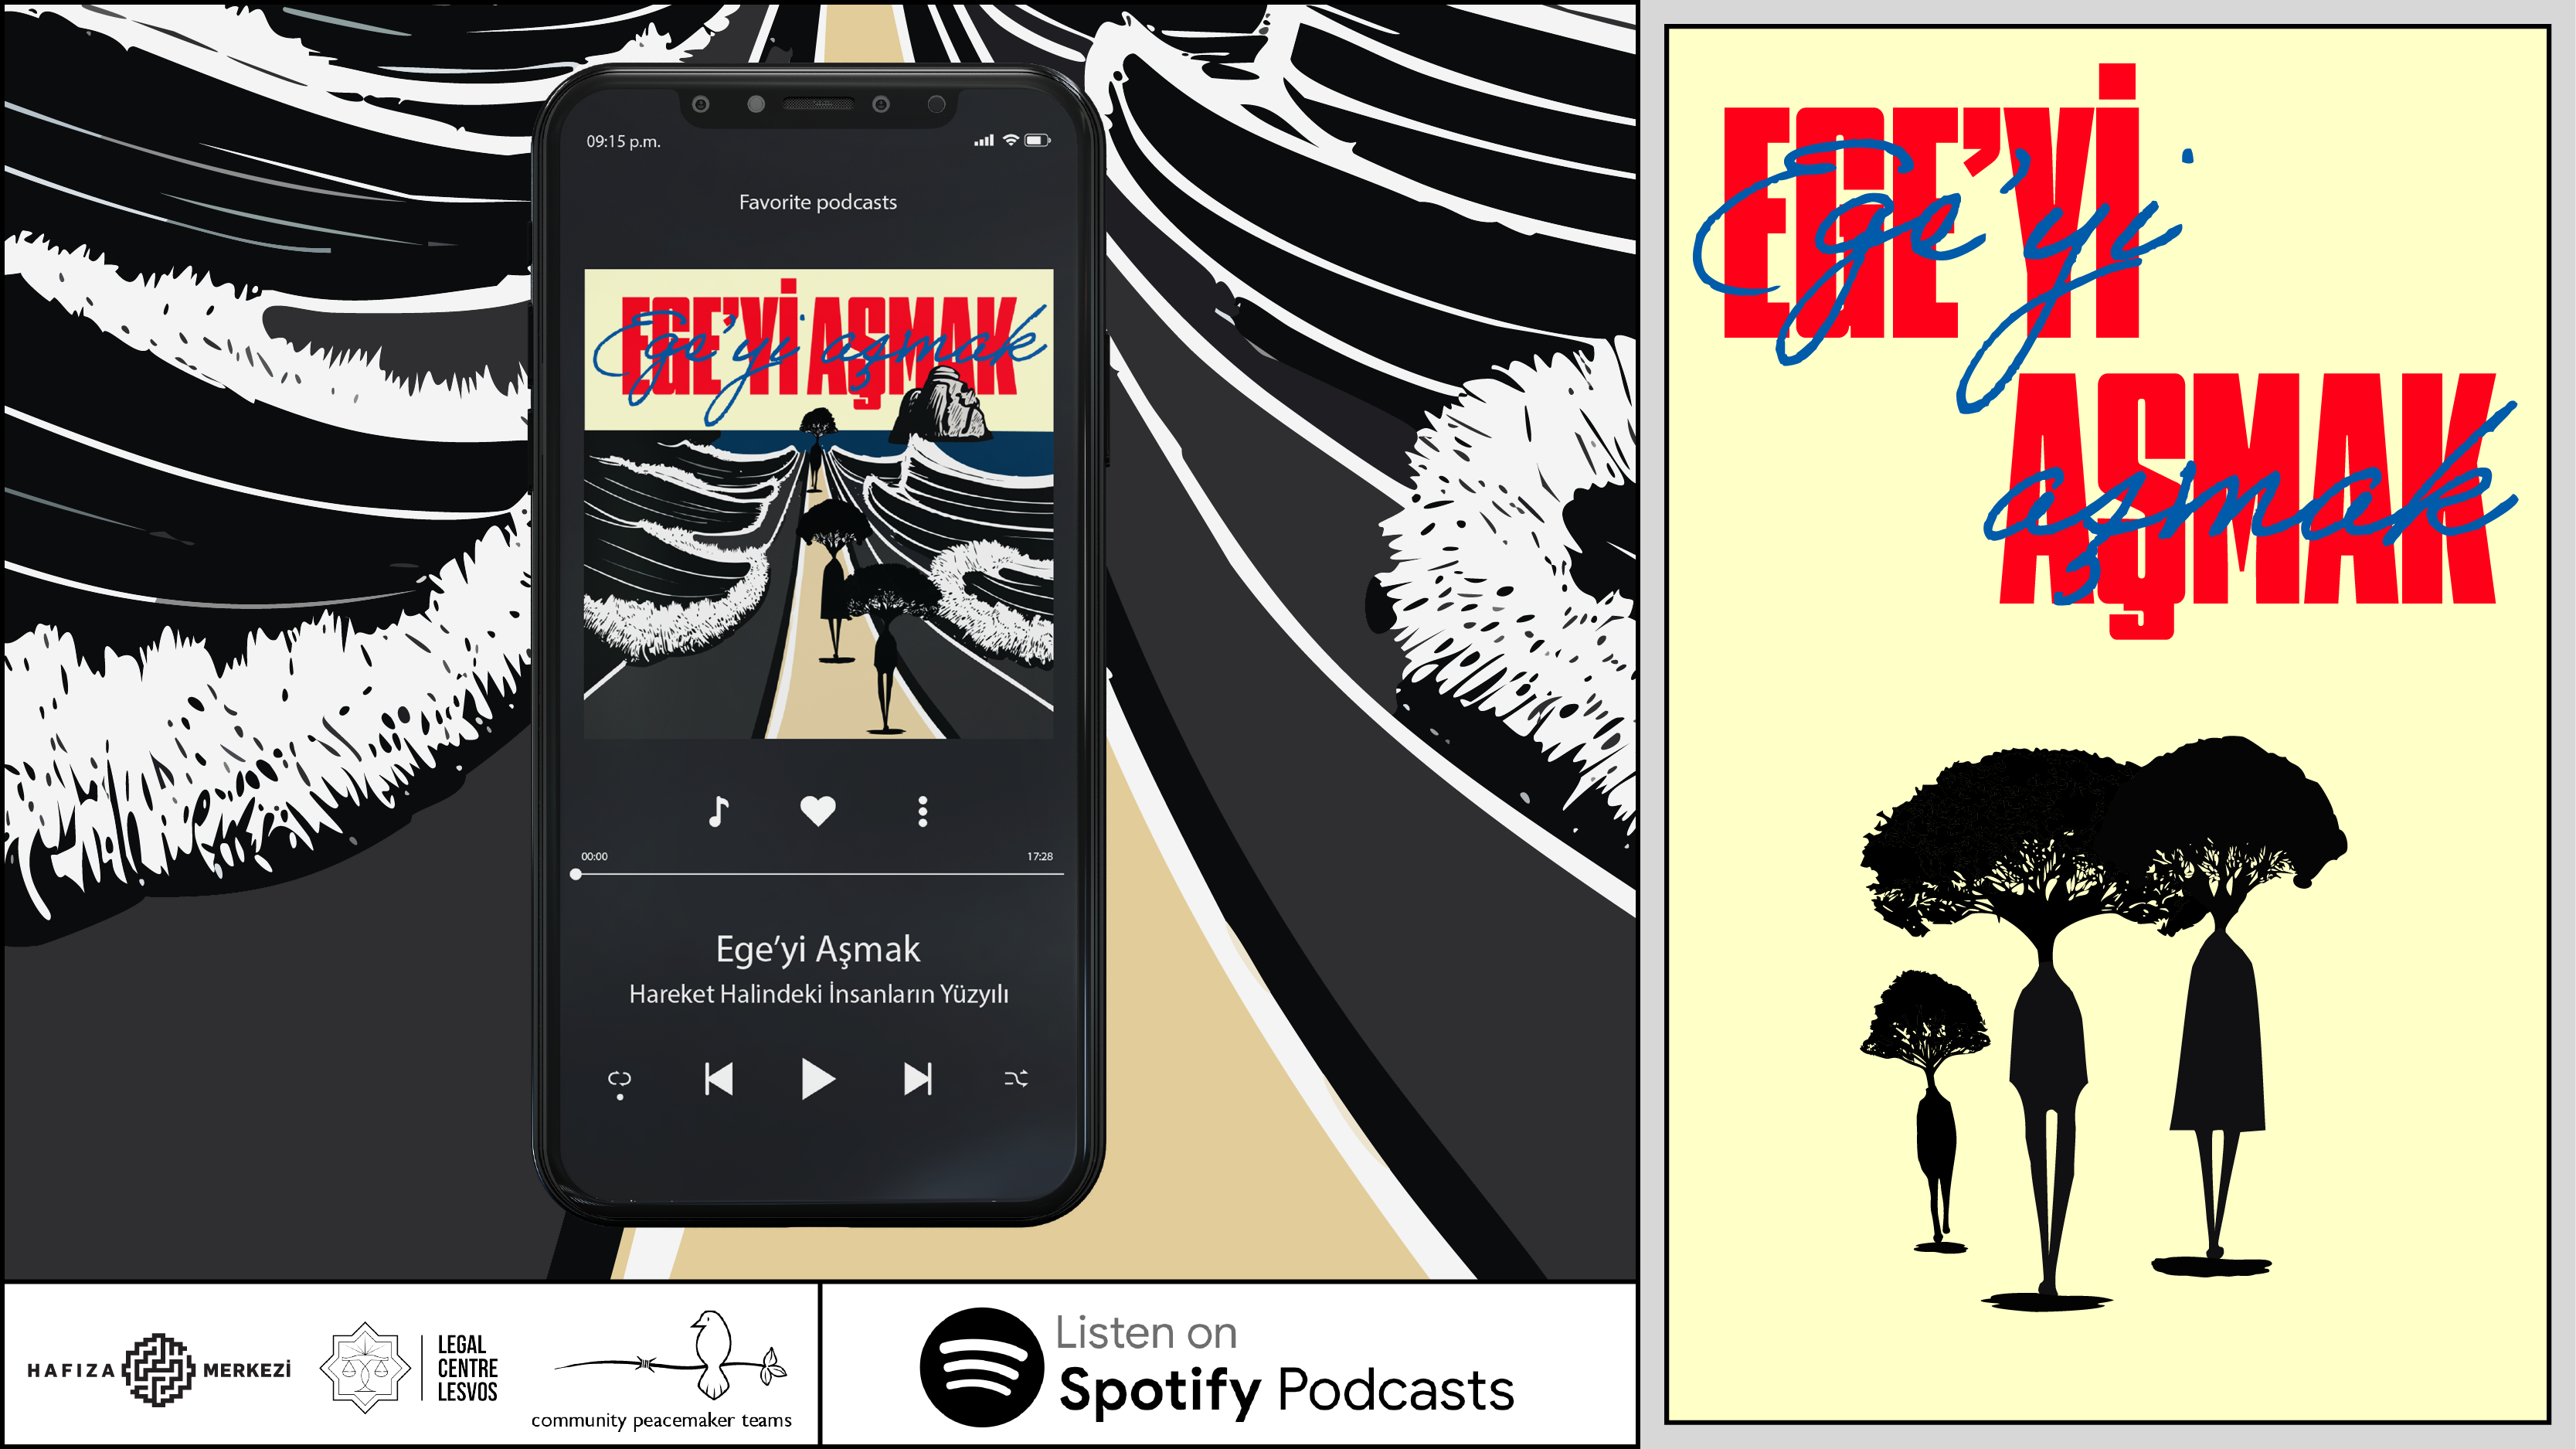 Ege'yi Aşmak podcast serisinin kapak görseli ve logosunu gösteren üç boyutlu çalışma.